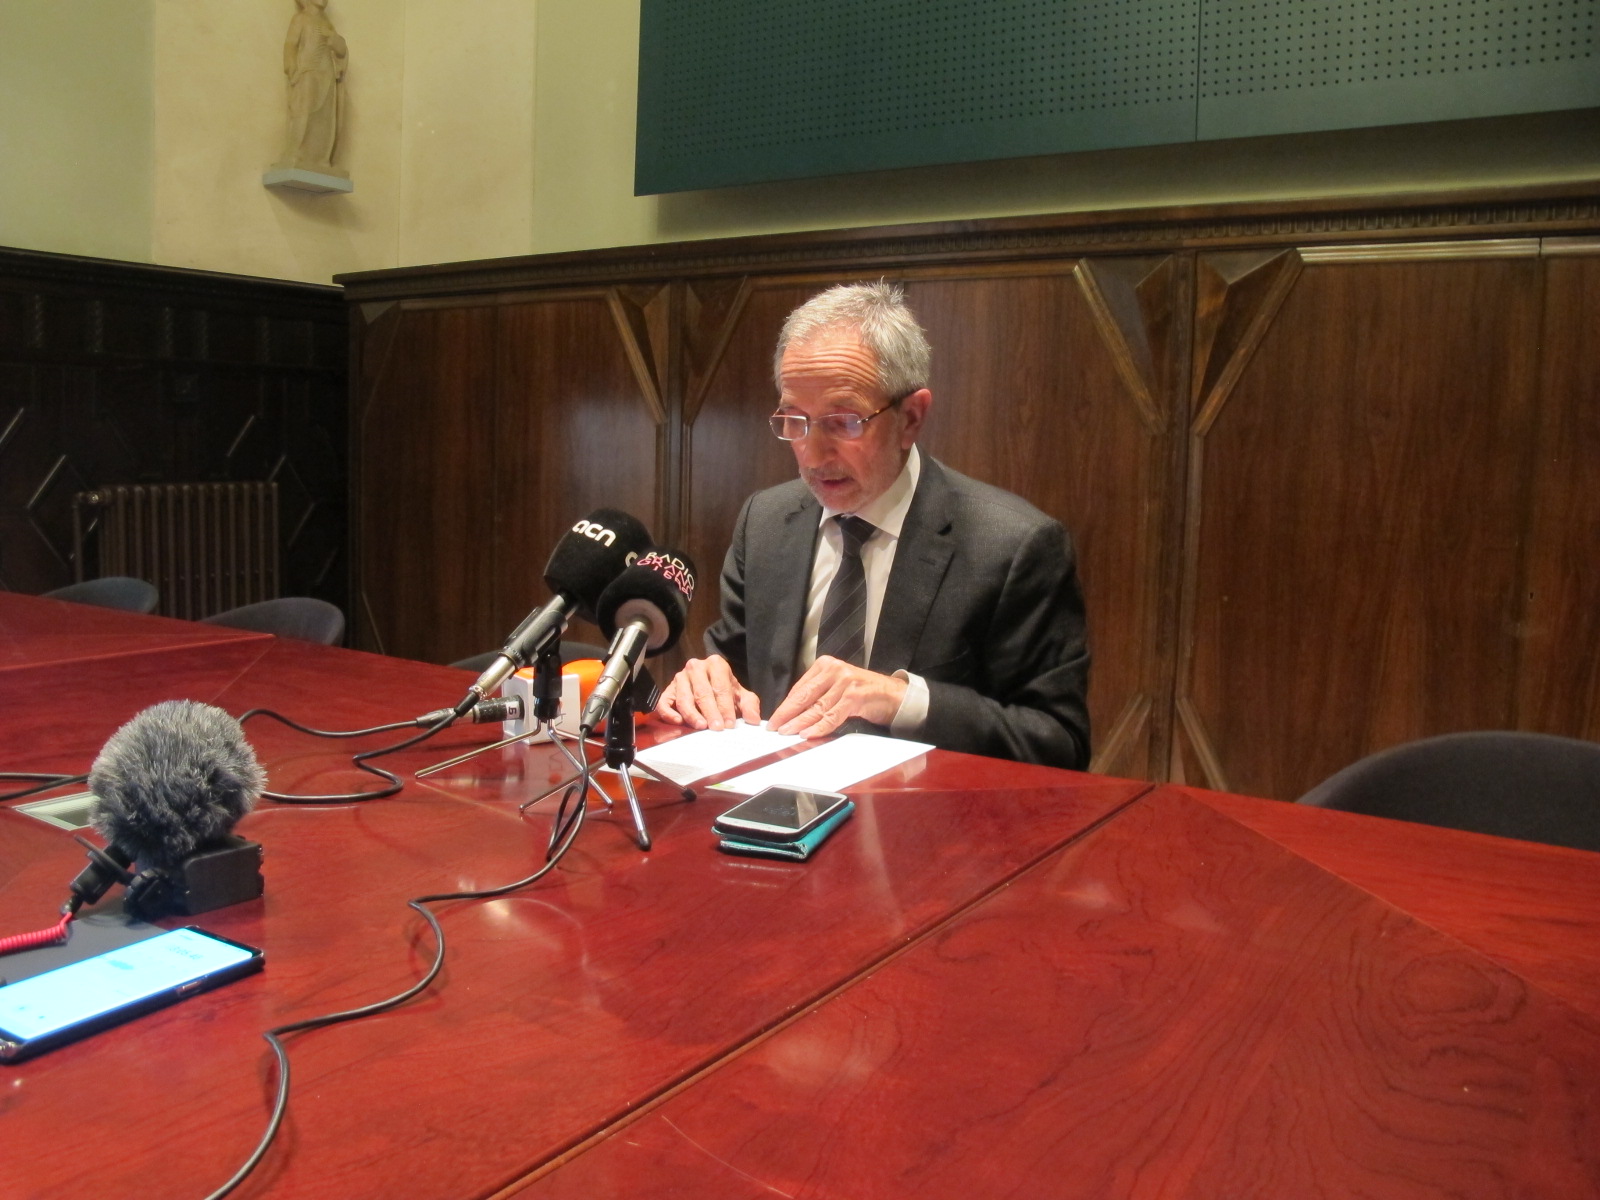 Declaració de l'alcalde de Granollers, Josep Mayoral, davant la situació política actual